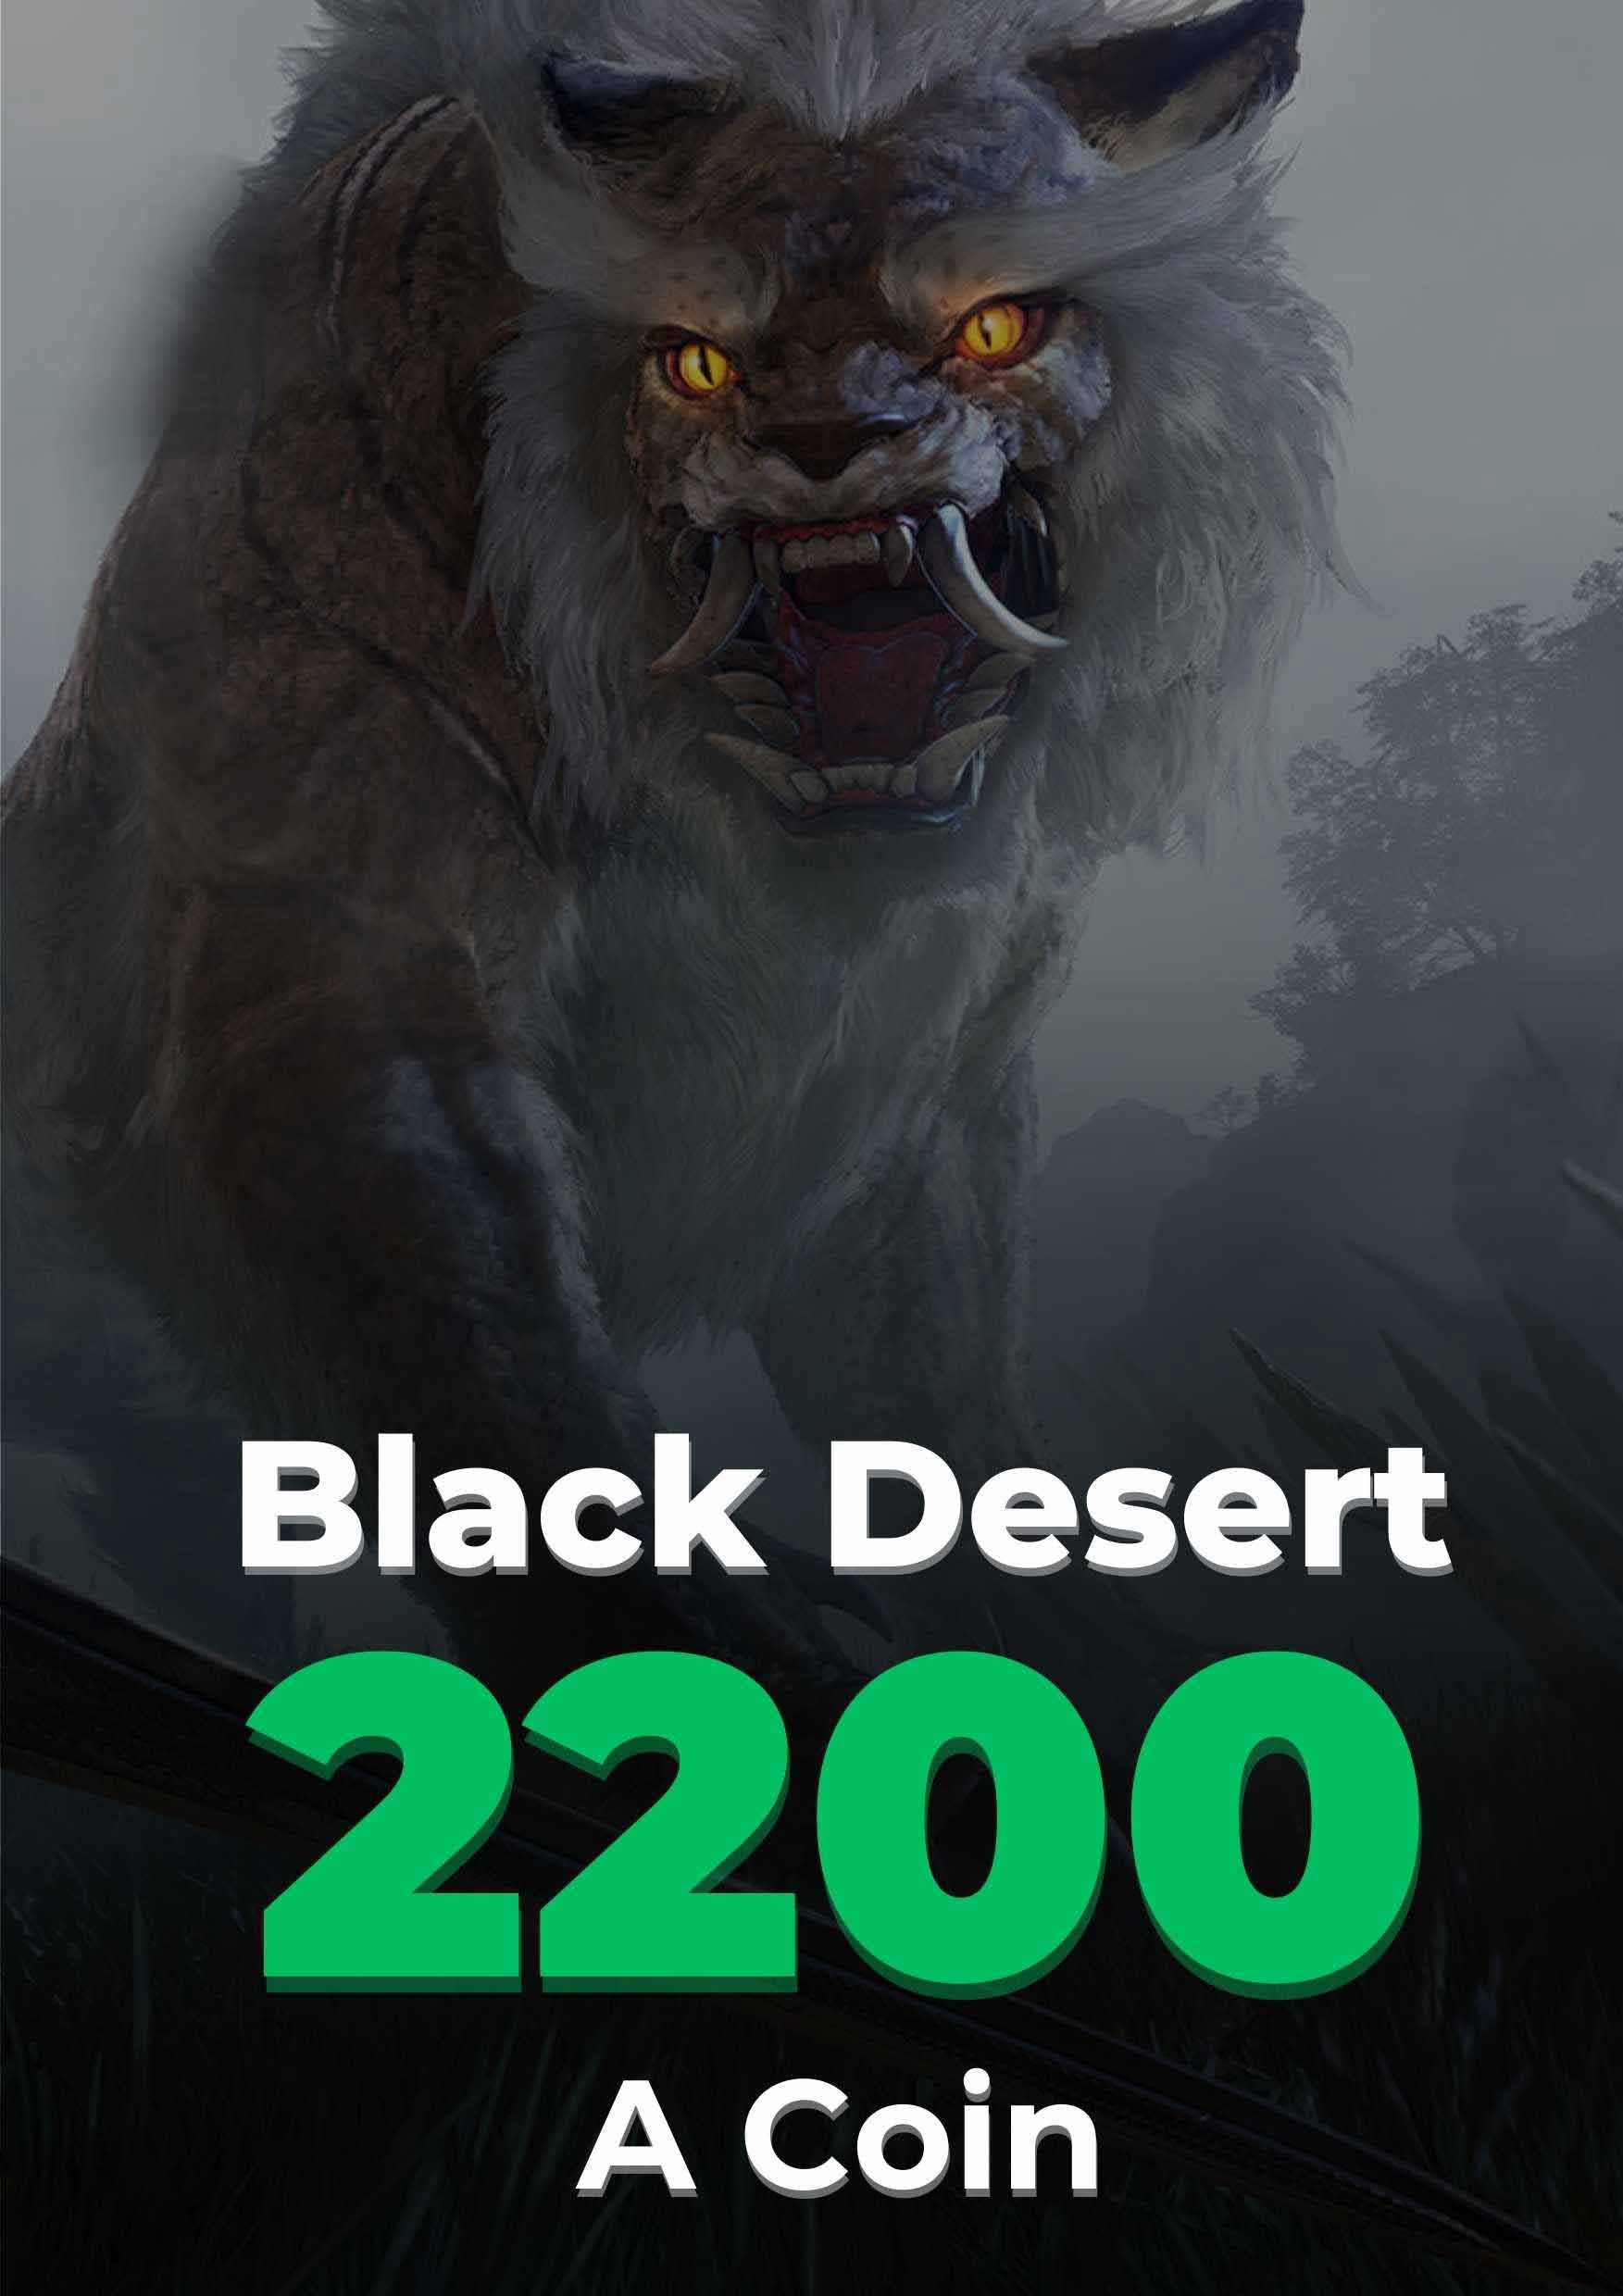 Black Desert 2000 + 200 Acoin